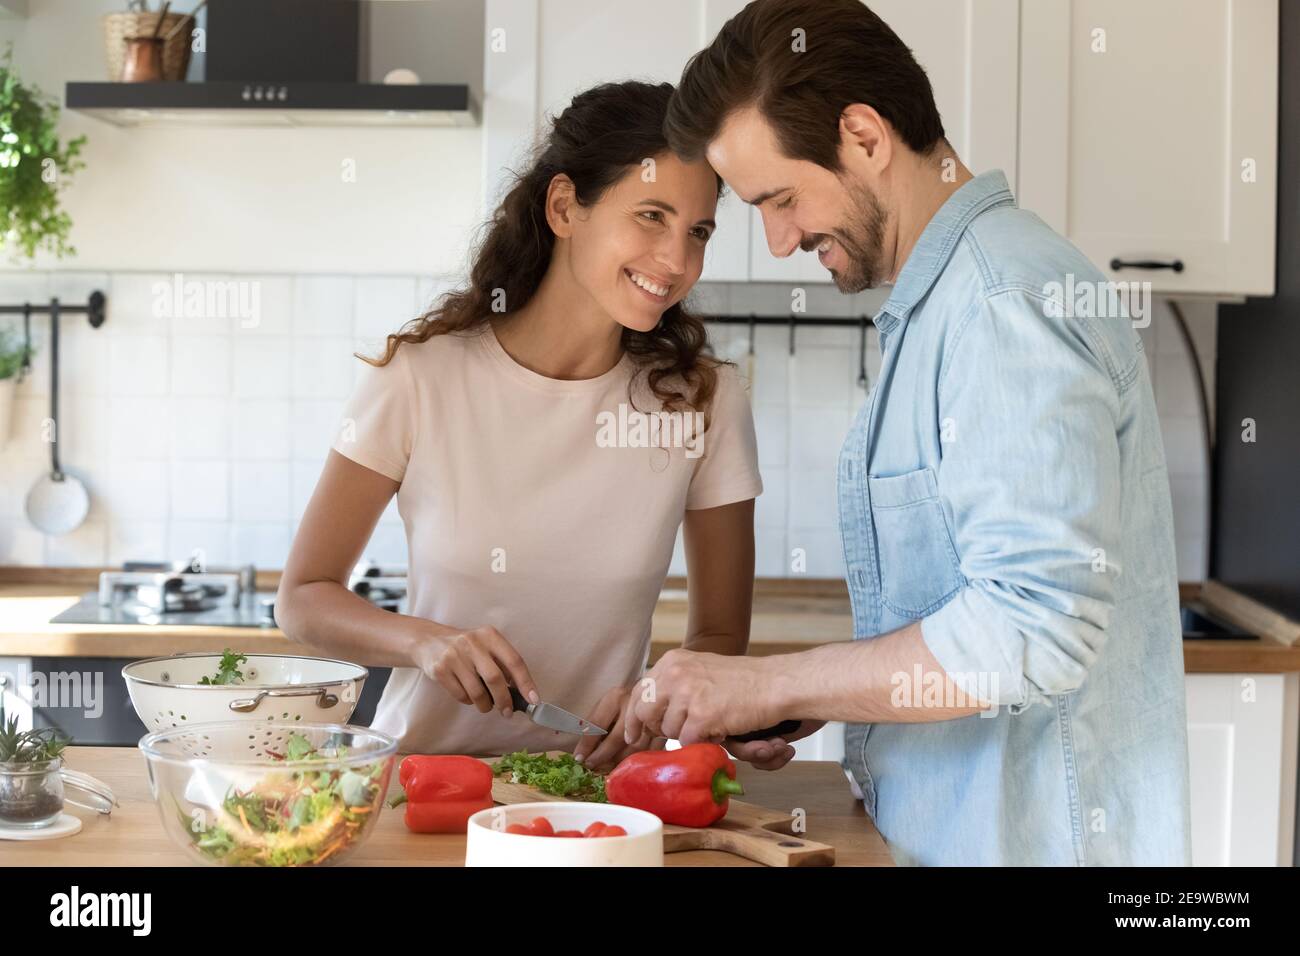 Positivi giovani sposi cucinando cibo godendo piacevole conversazione in cucina Foto Stock